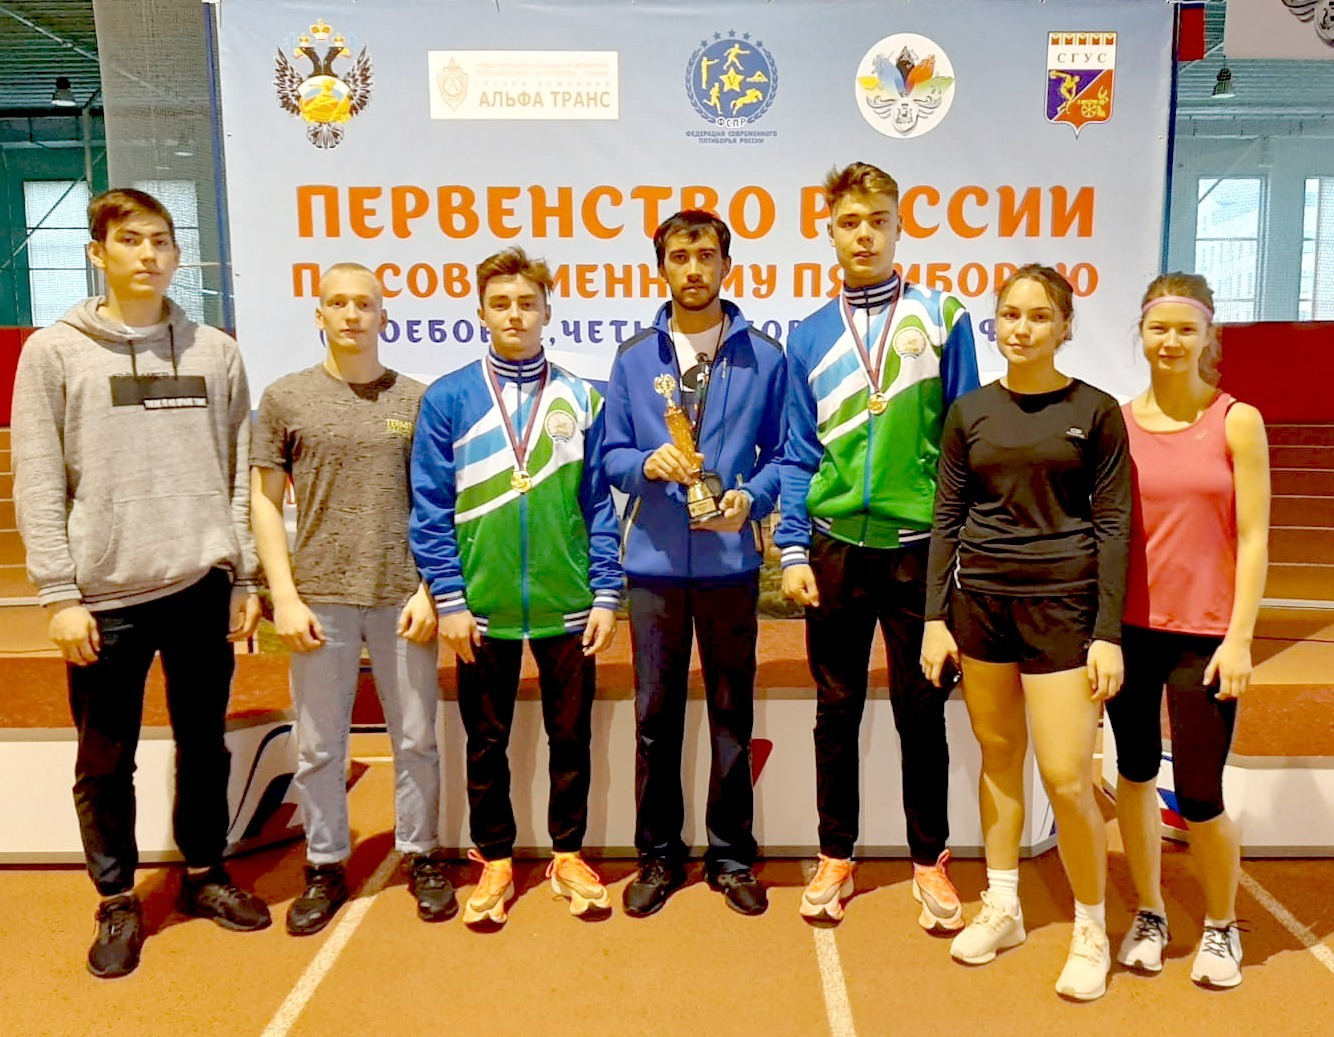 Равшан Мирзакаримов (в центре) вместе со своими воспитанниками, которые заняли первое место на первенстве России по современному пятиборью в эстафете юношей и девушек 14-16 лет.